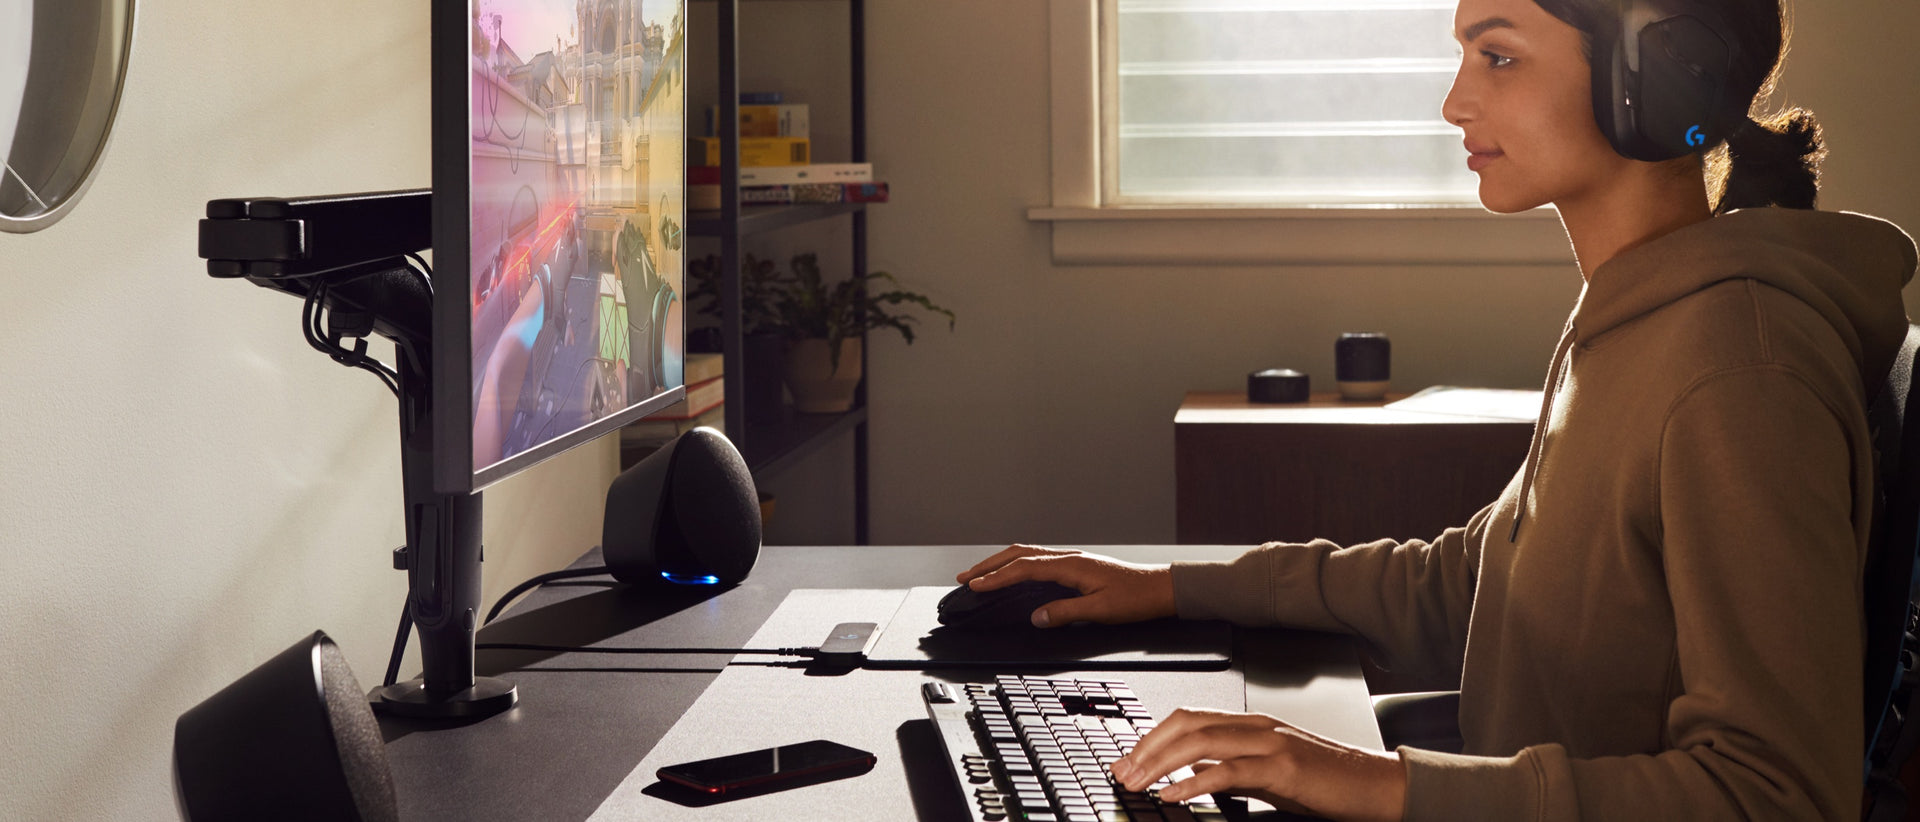 Una donna con una felpa indossa degli auricolari e ha una mano sul mouse e l’altra sulla tastiera, mentre guarda un monitor collocato su un braccio porta monitor Ollin.